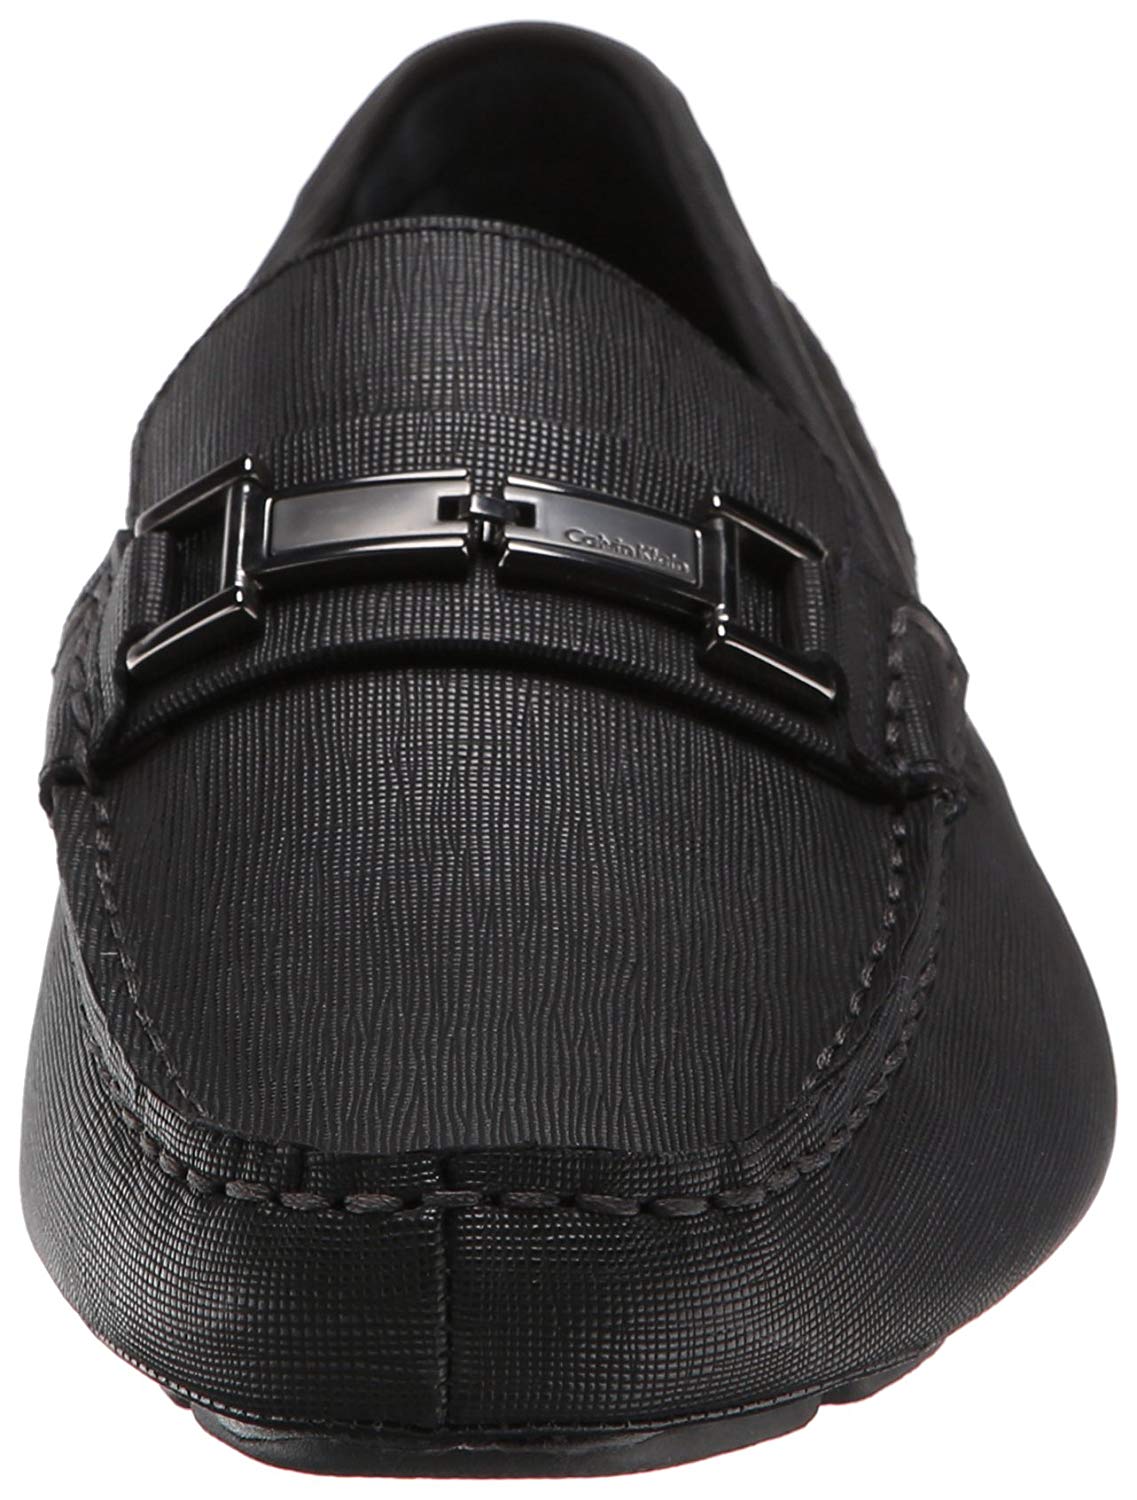 Calvin Klein Men's Magnus Slip-On Loafer, Black, Size 11.0 g5Cg | eBay